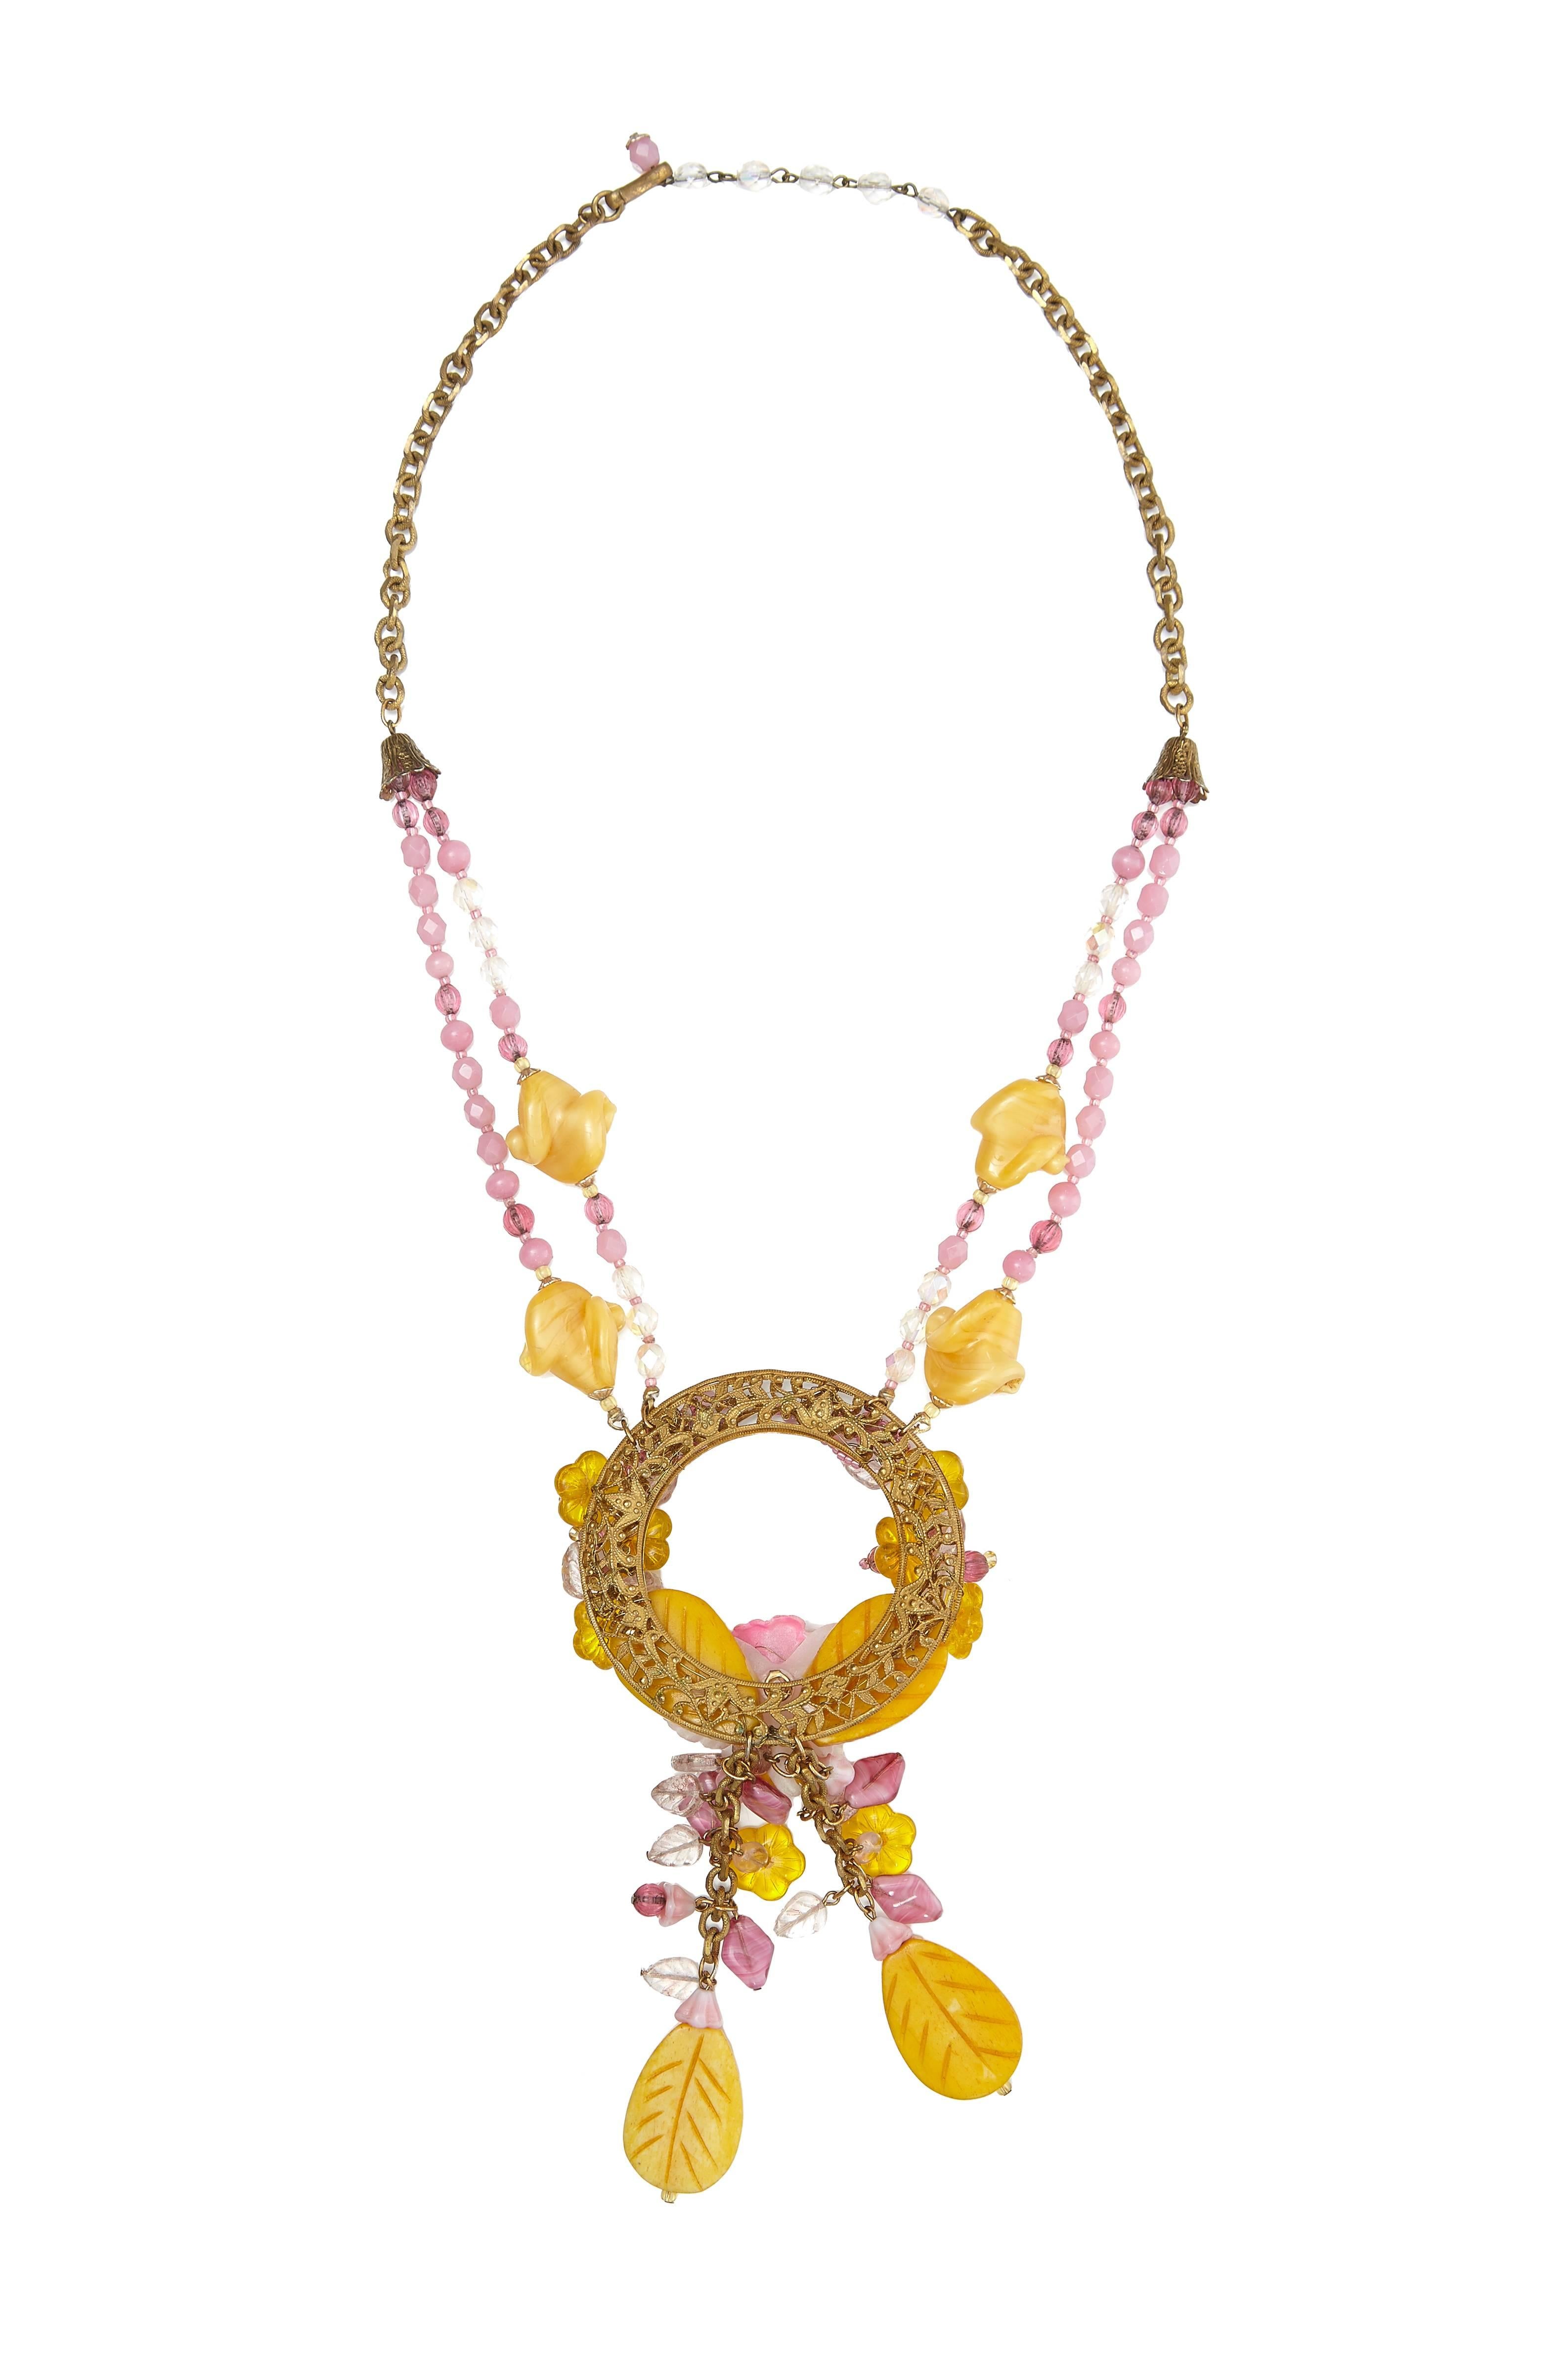 Original 1960er Miriam Haskell rosa und gelbe Glasperlenkette mit goldfarbener Kette.  Dieses kühne und spektakuläre Stück besteht aus Ketten und Perlen, die von einem großen zentralen Reif herabhängen, mit einem hübschen Blumenmuster und einer